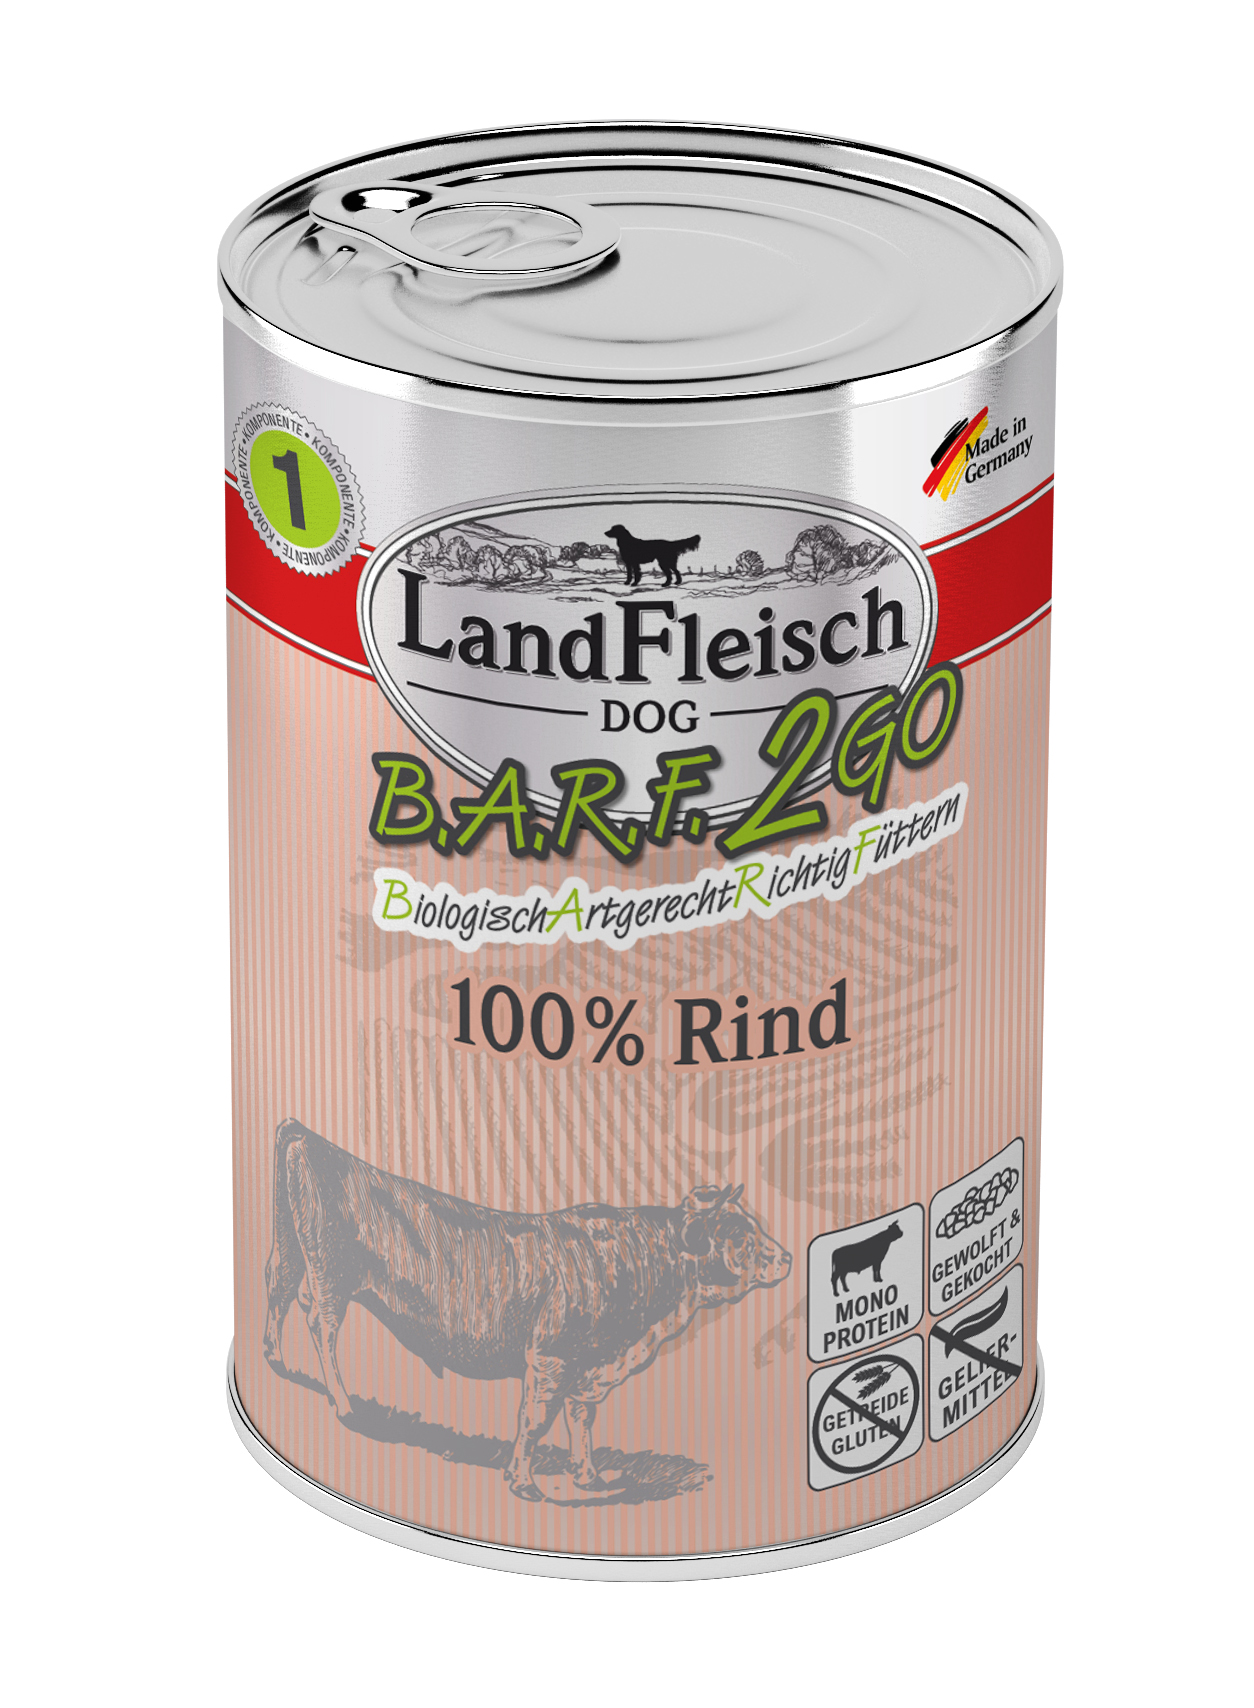 LandFleisch B.A.R.F.2GO 100% vom Rind 400g